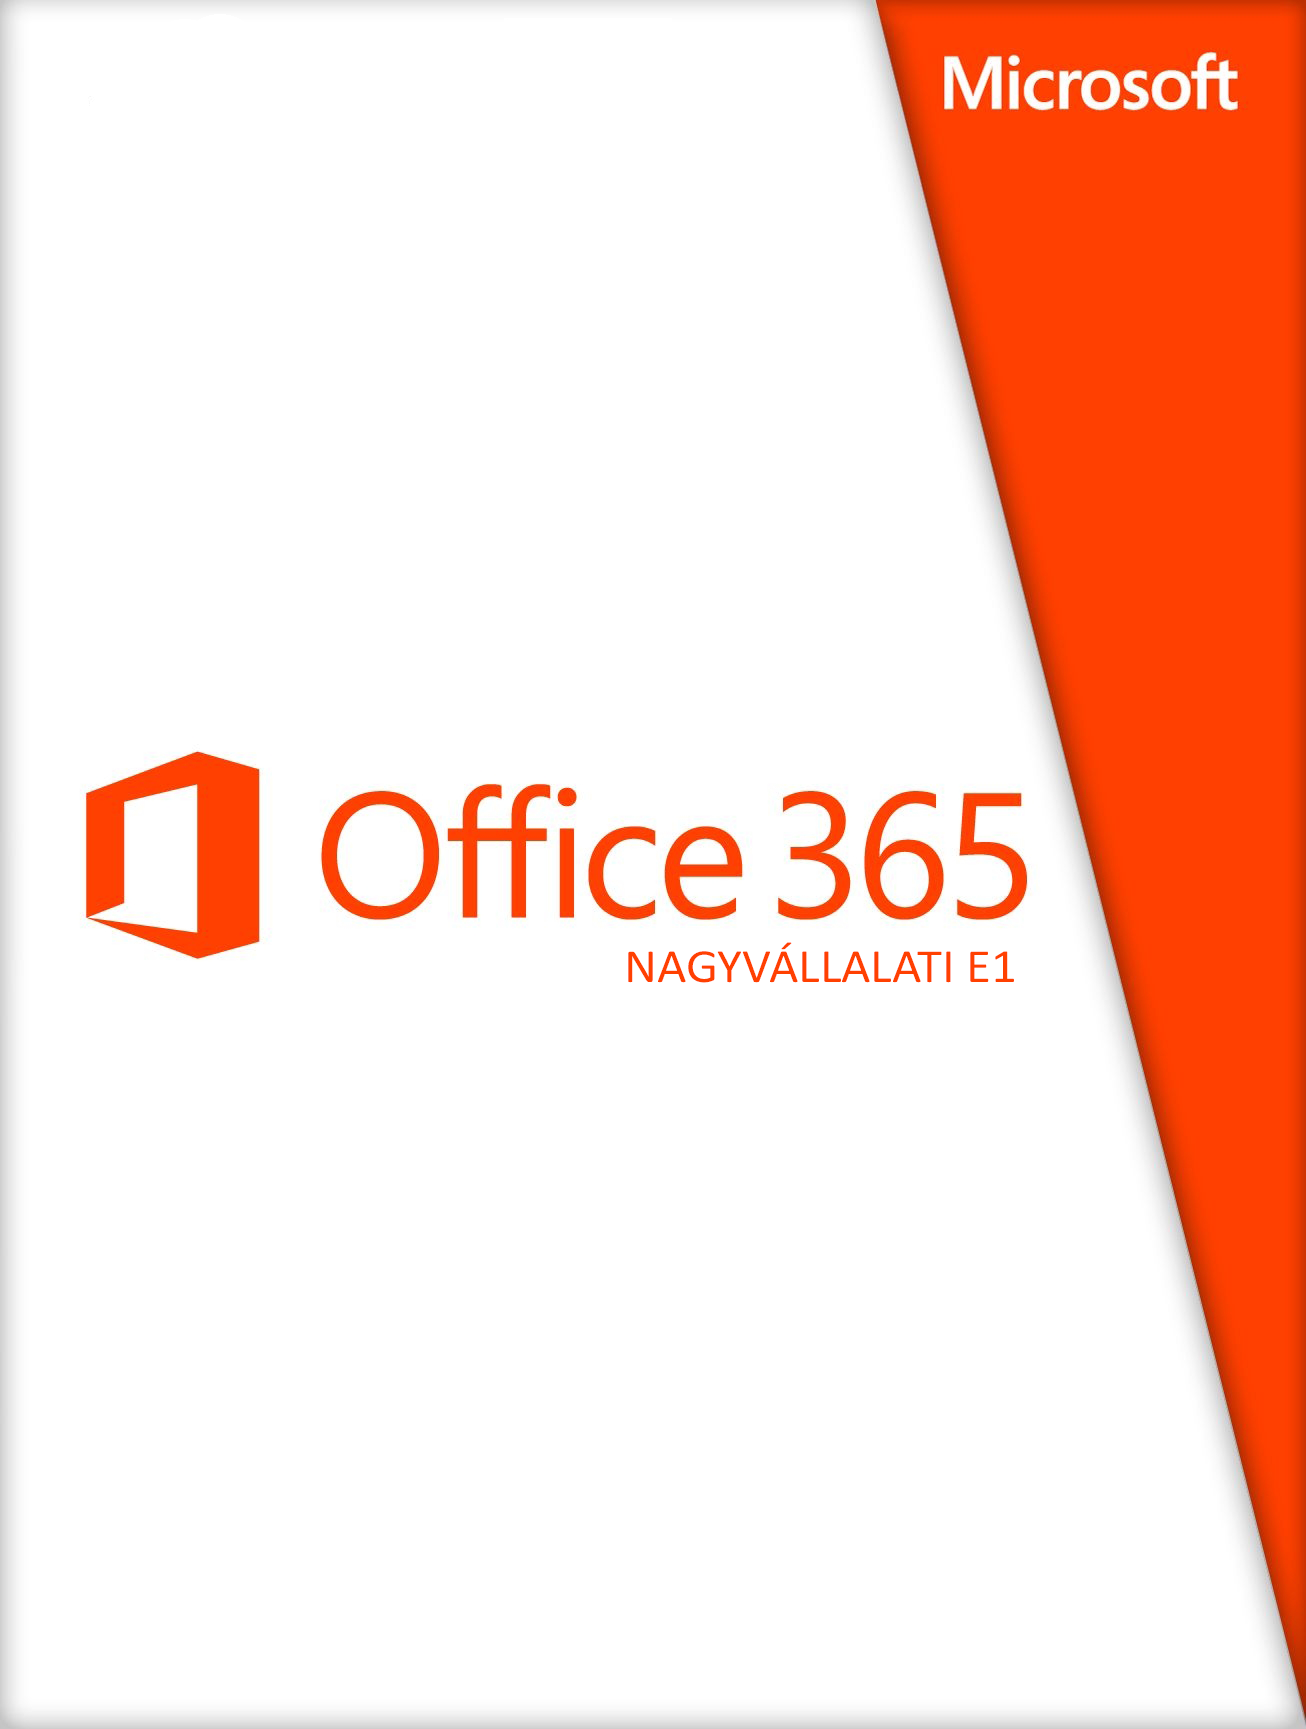 Office 365 Nagyvállalati E1 csomag (1 éves előfizetés egy felhasználó számára)